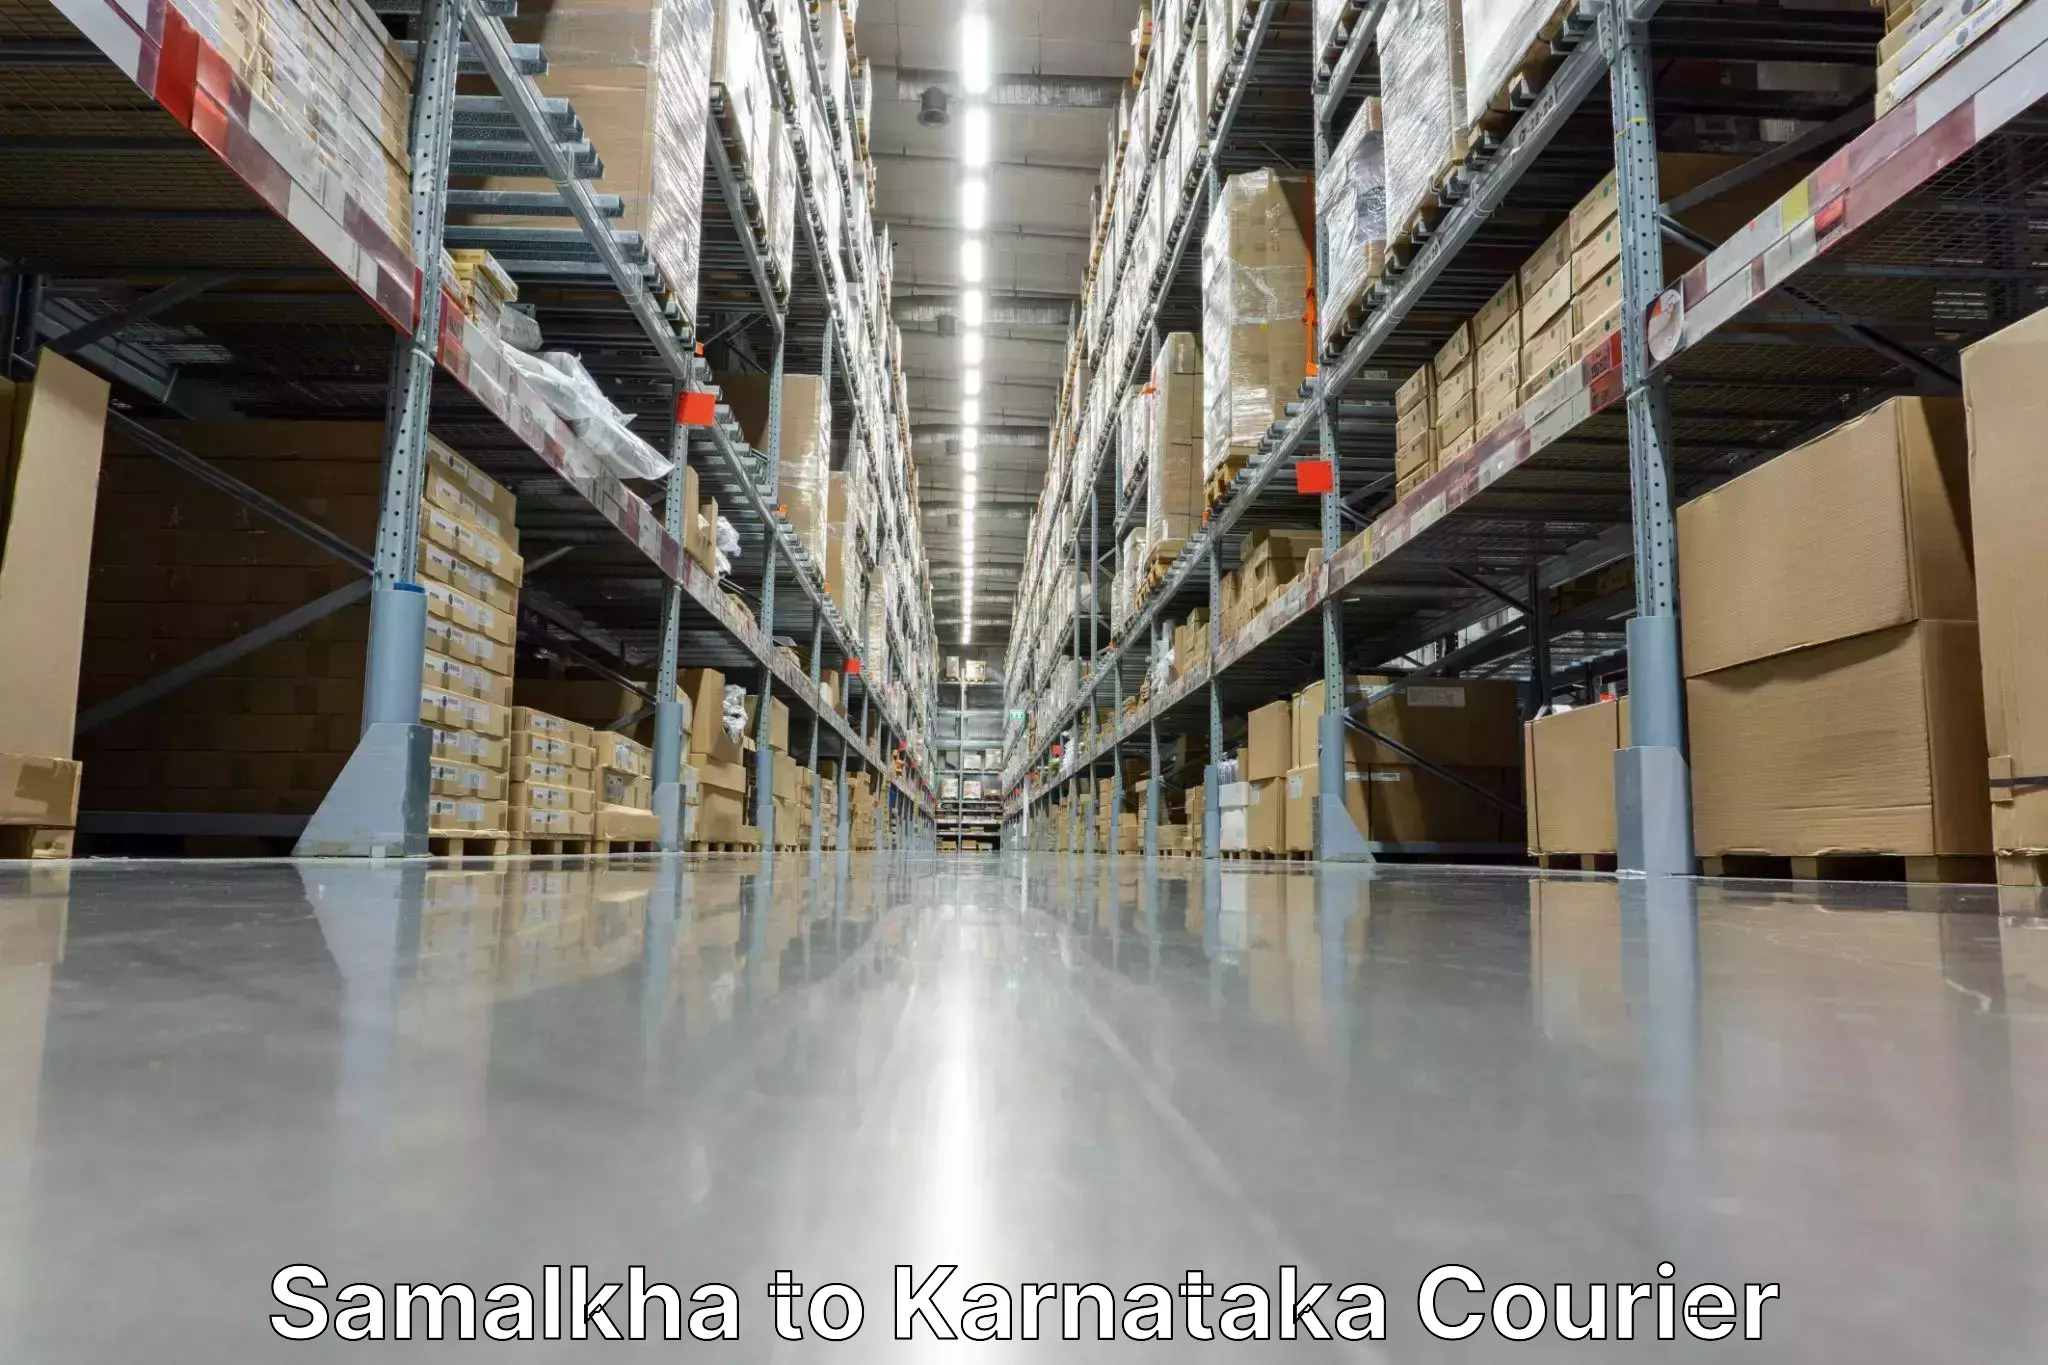 Customer-centric shipping in Samalkha to NIT Srinivasanagar